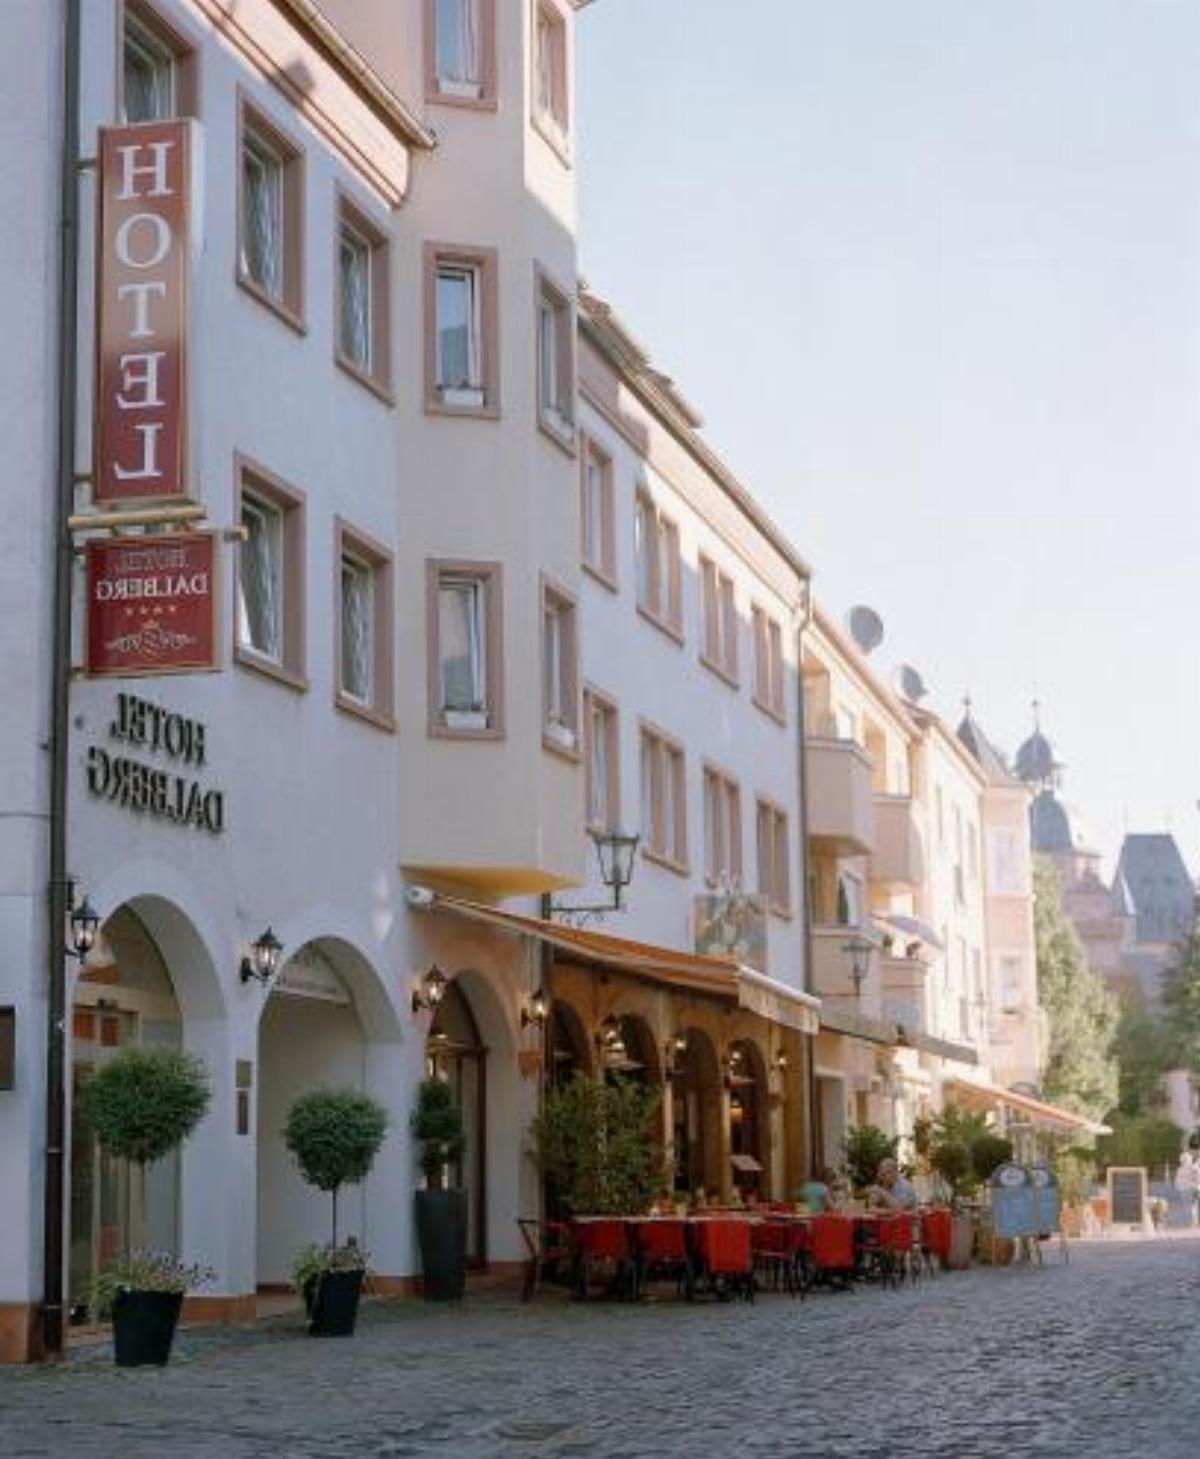 Hotel Dalberg Hotel Aschaffenburg Germany